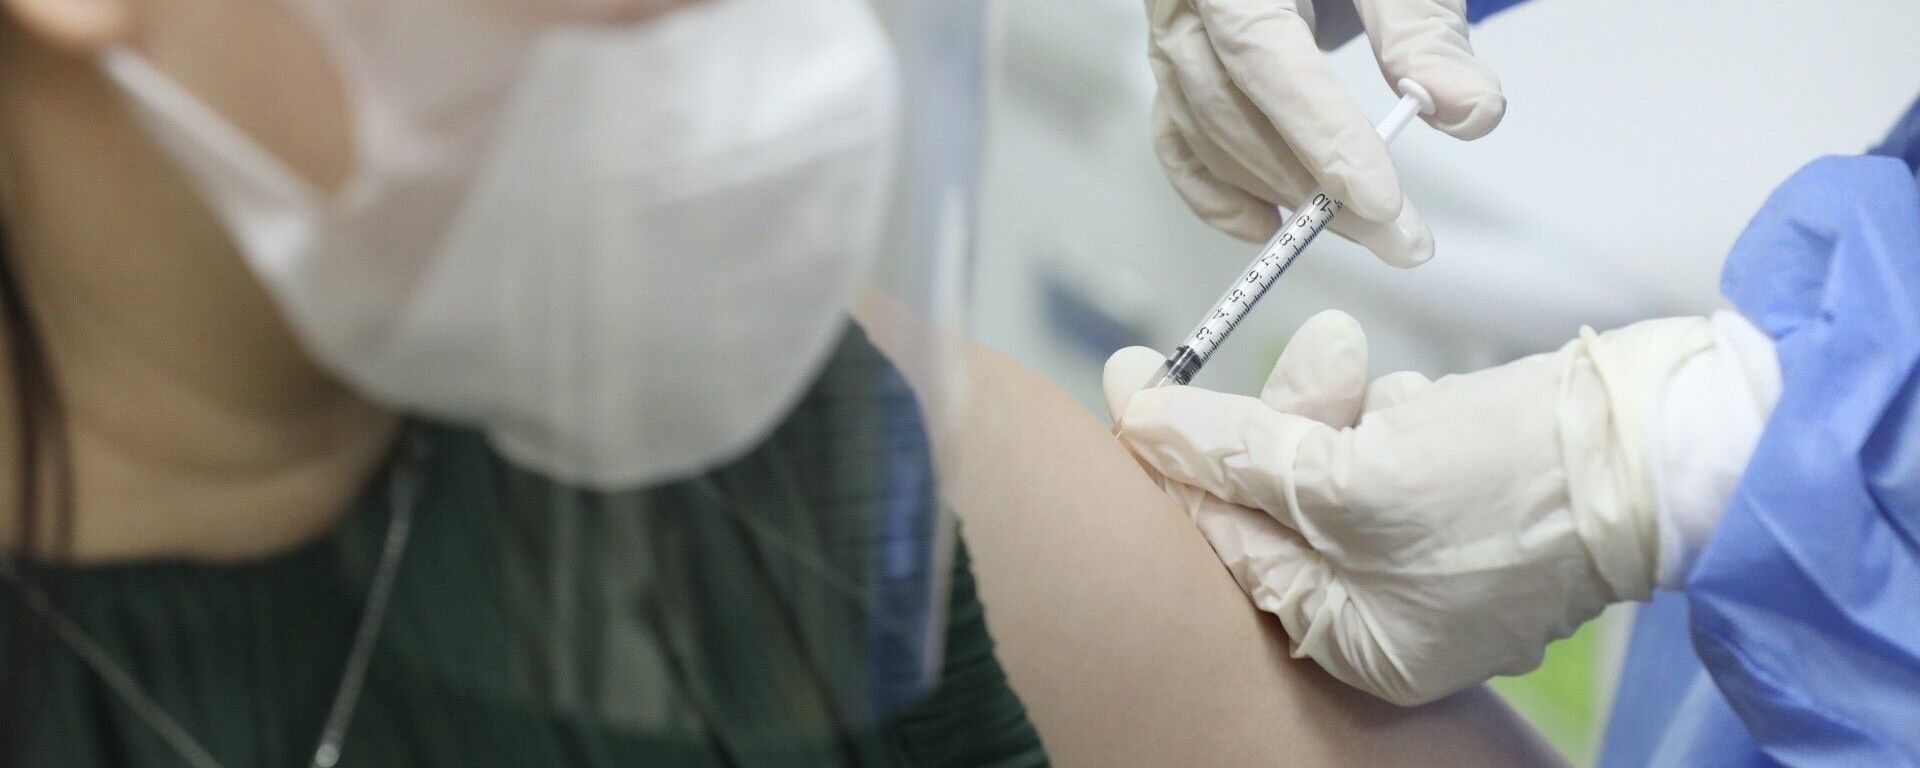 Nhân viên y tế tiêm vaccine phòng COVID-19 cho sản phụ tại điểm tiêm chủng Bệnh viện Phụ sản Hà Nội ngày 11/9/2021 - Sputnik Việt Nam, 1920, 11.09.2021